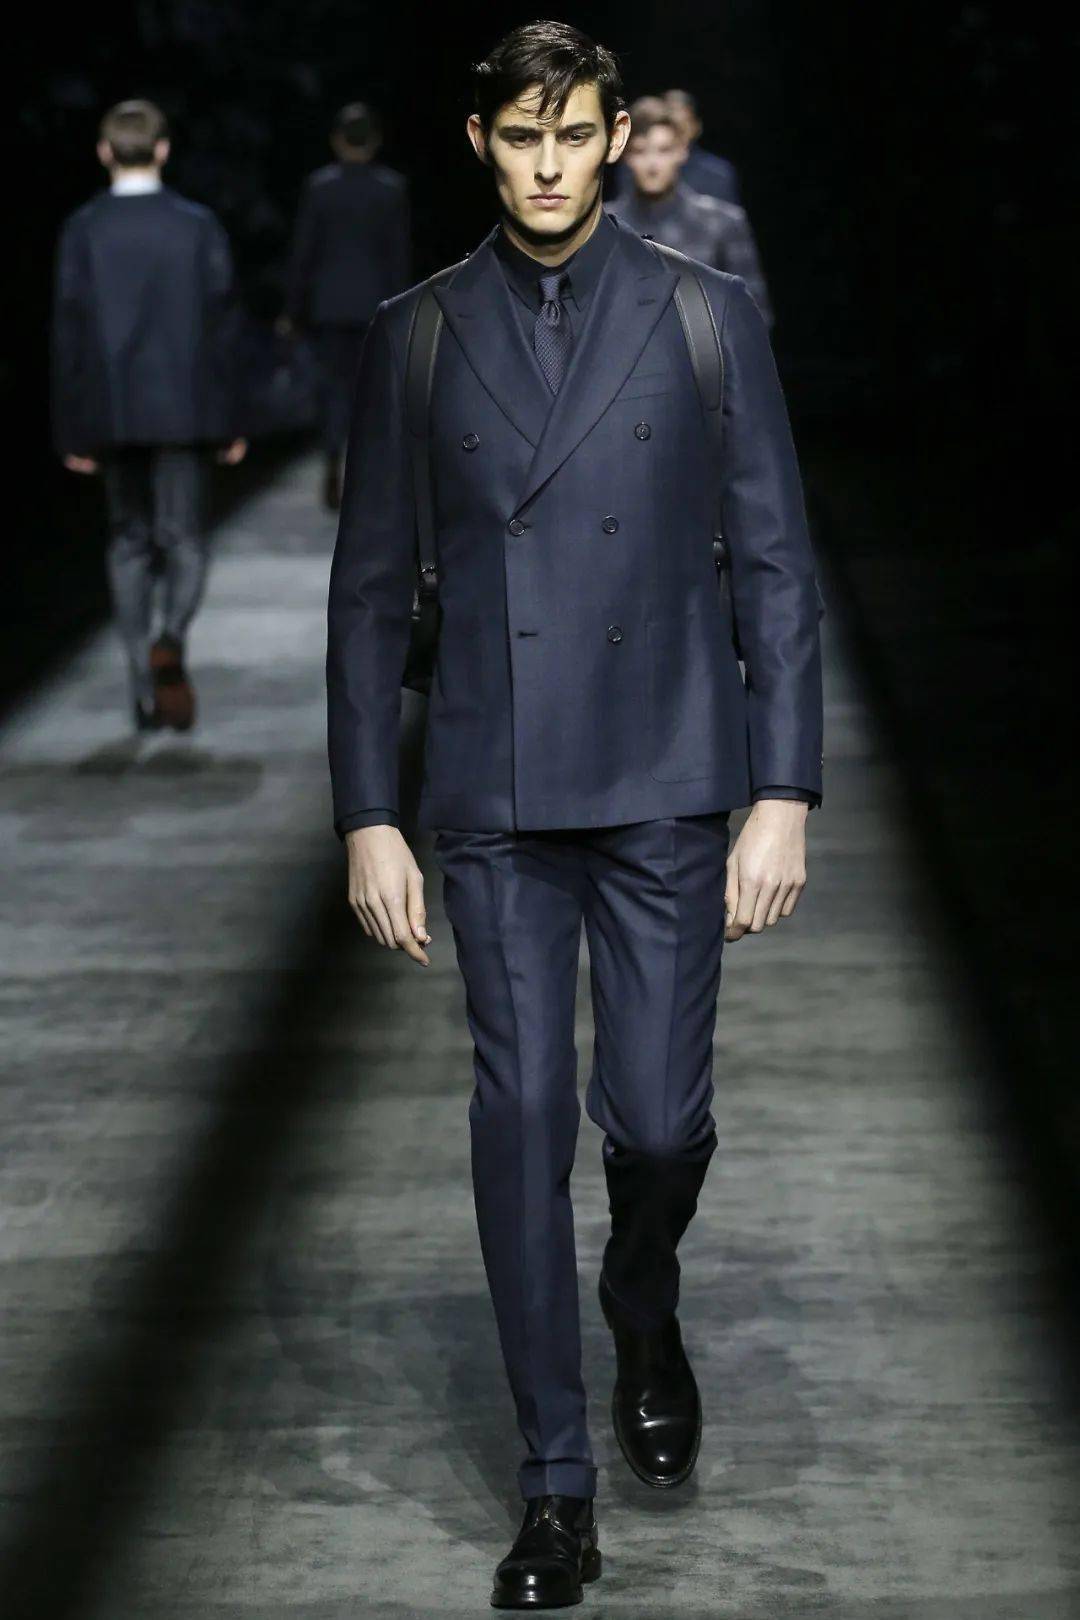 布拉德·皮特代言全球顶级奢侈男装品牌!